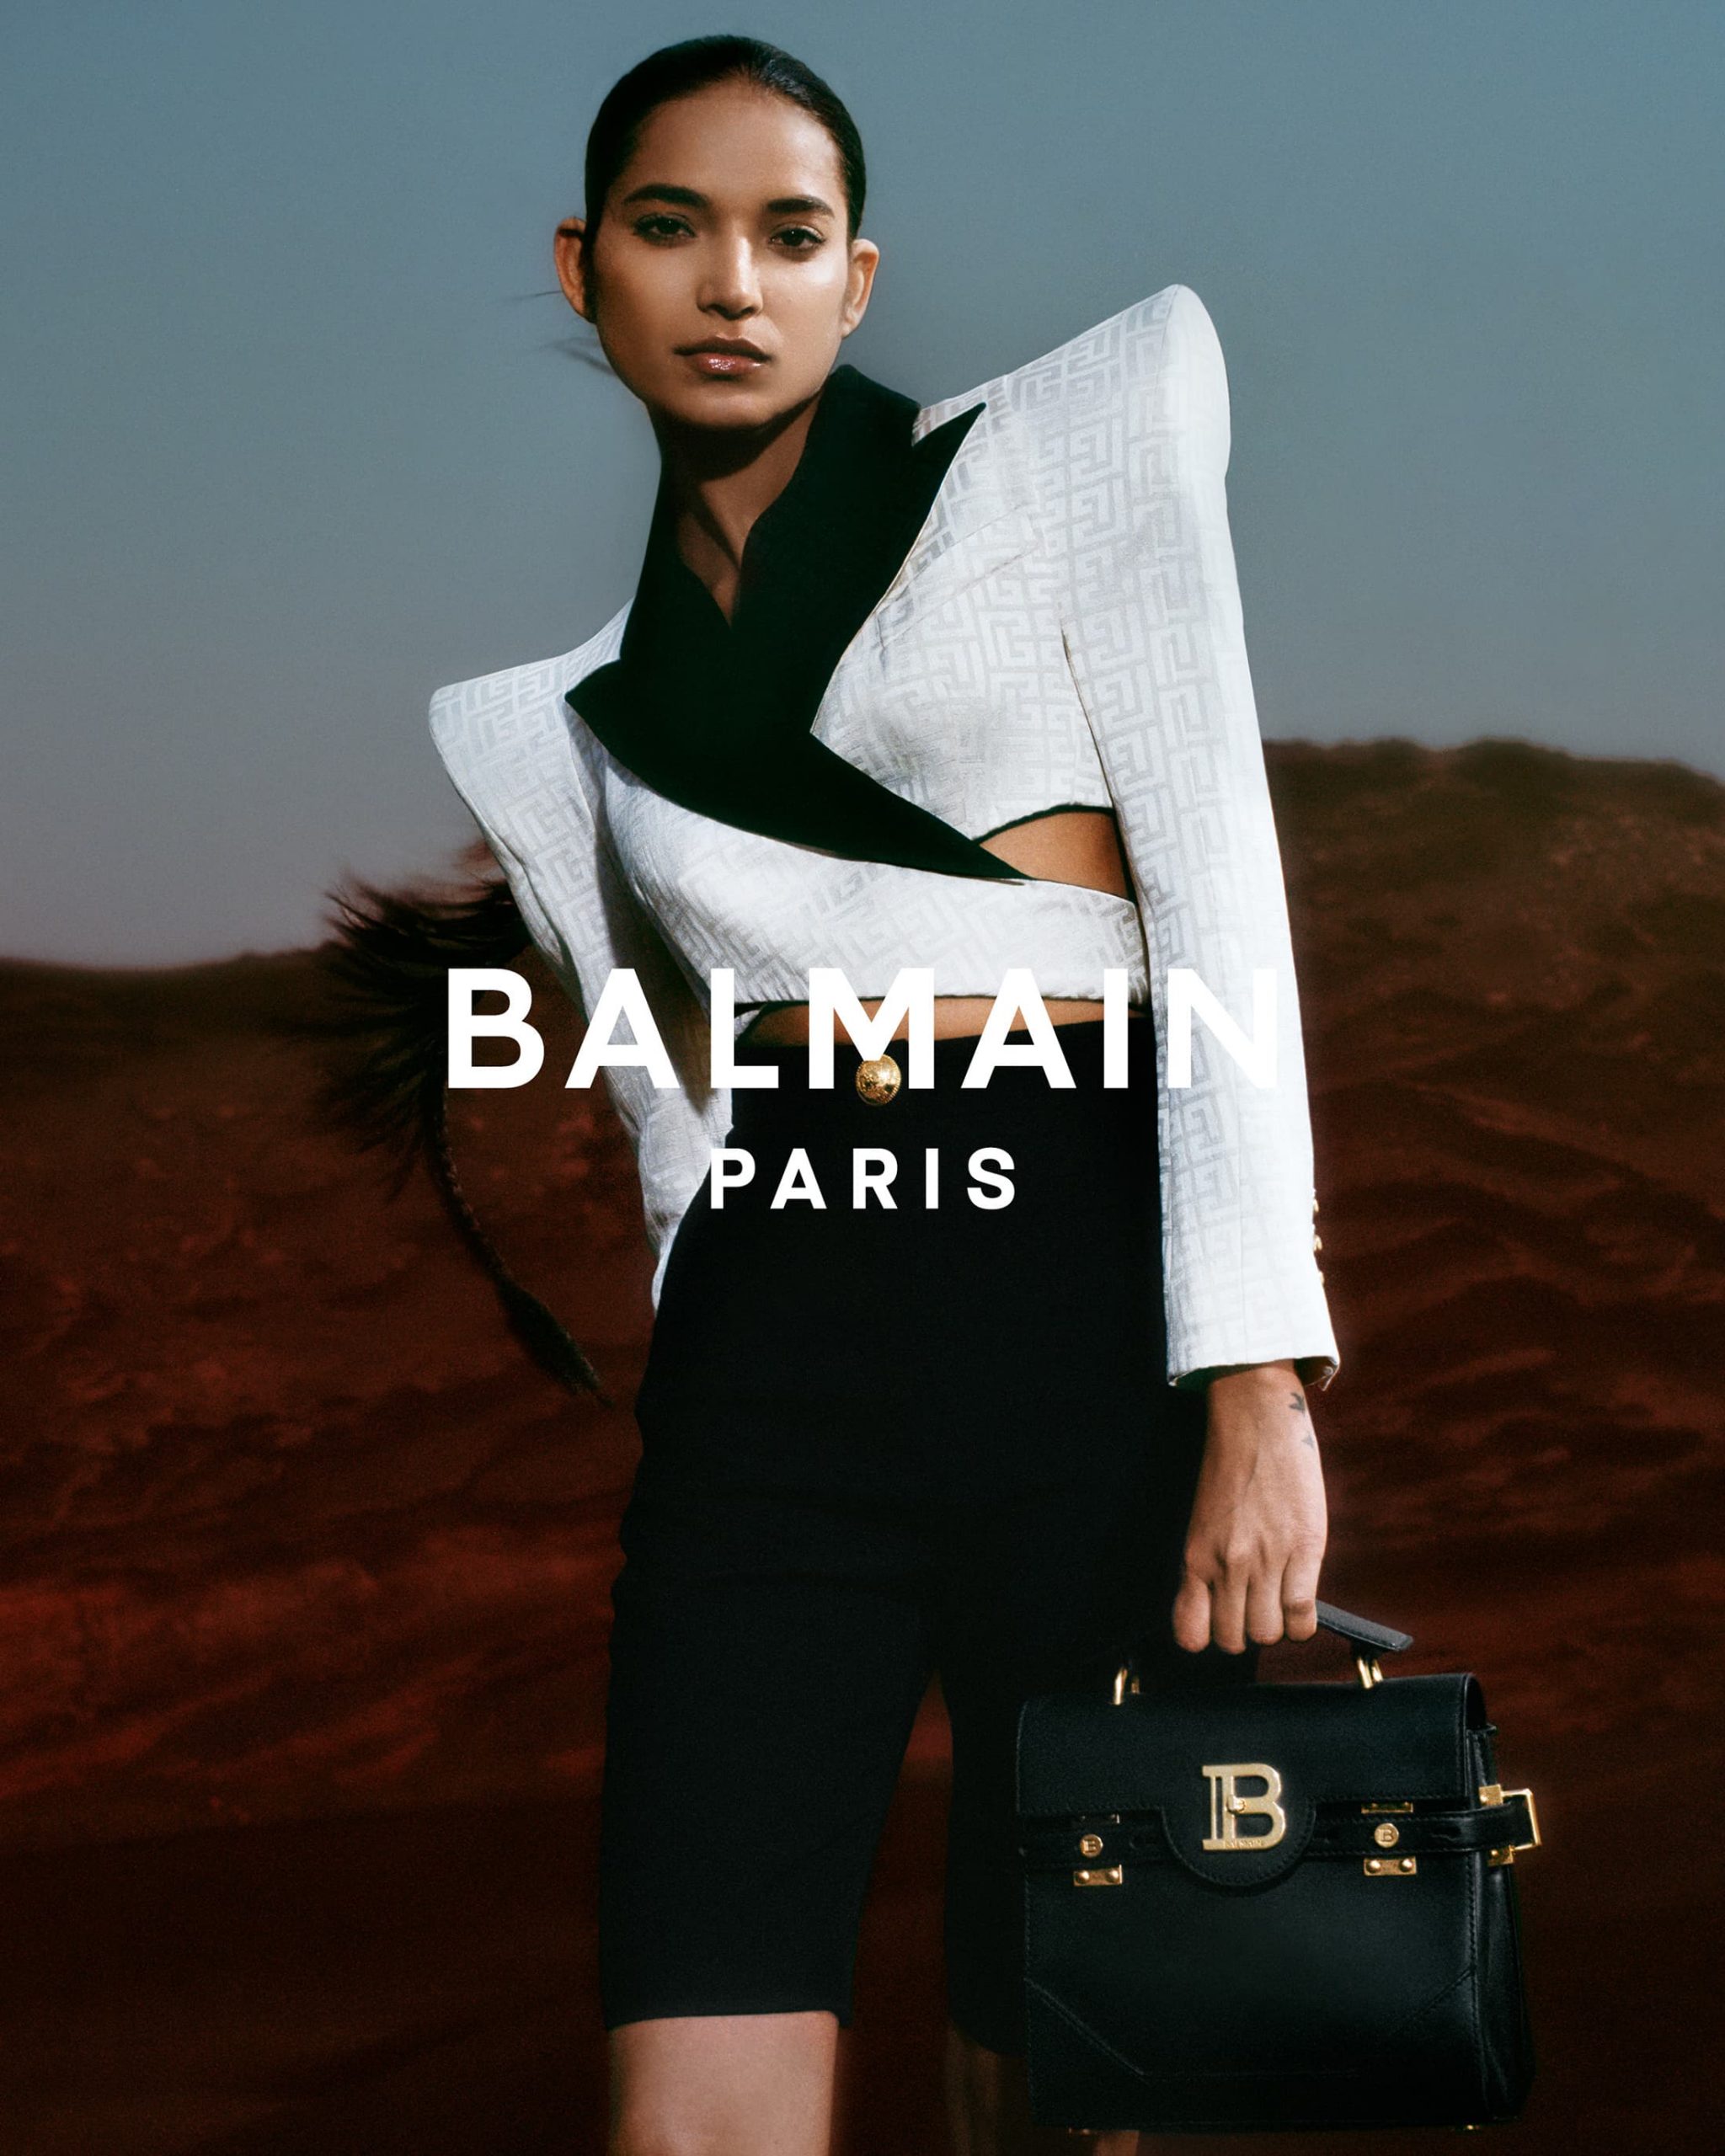 Fashion Bags Campaign Paris on Behance